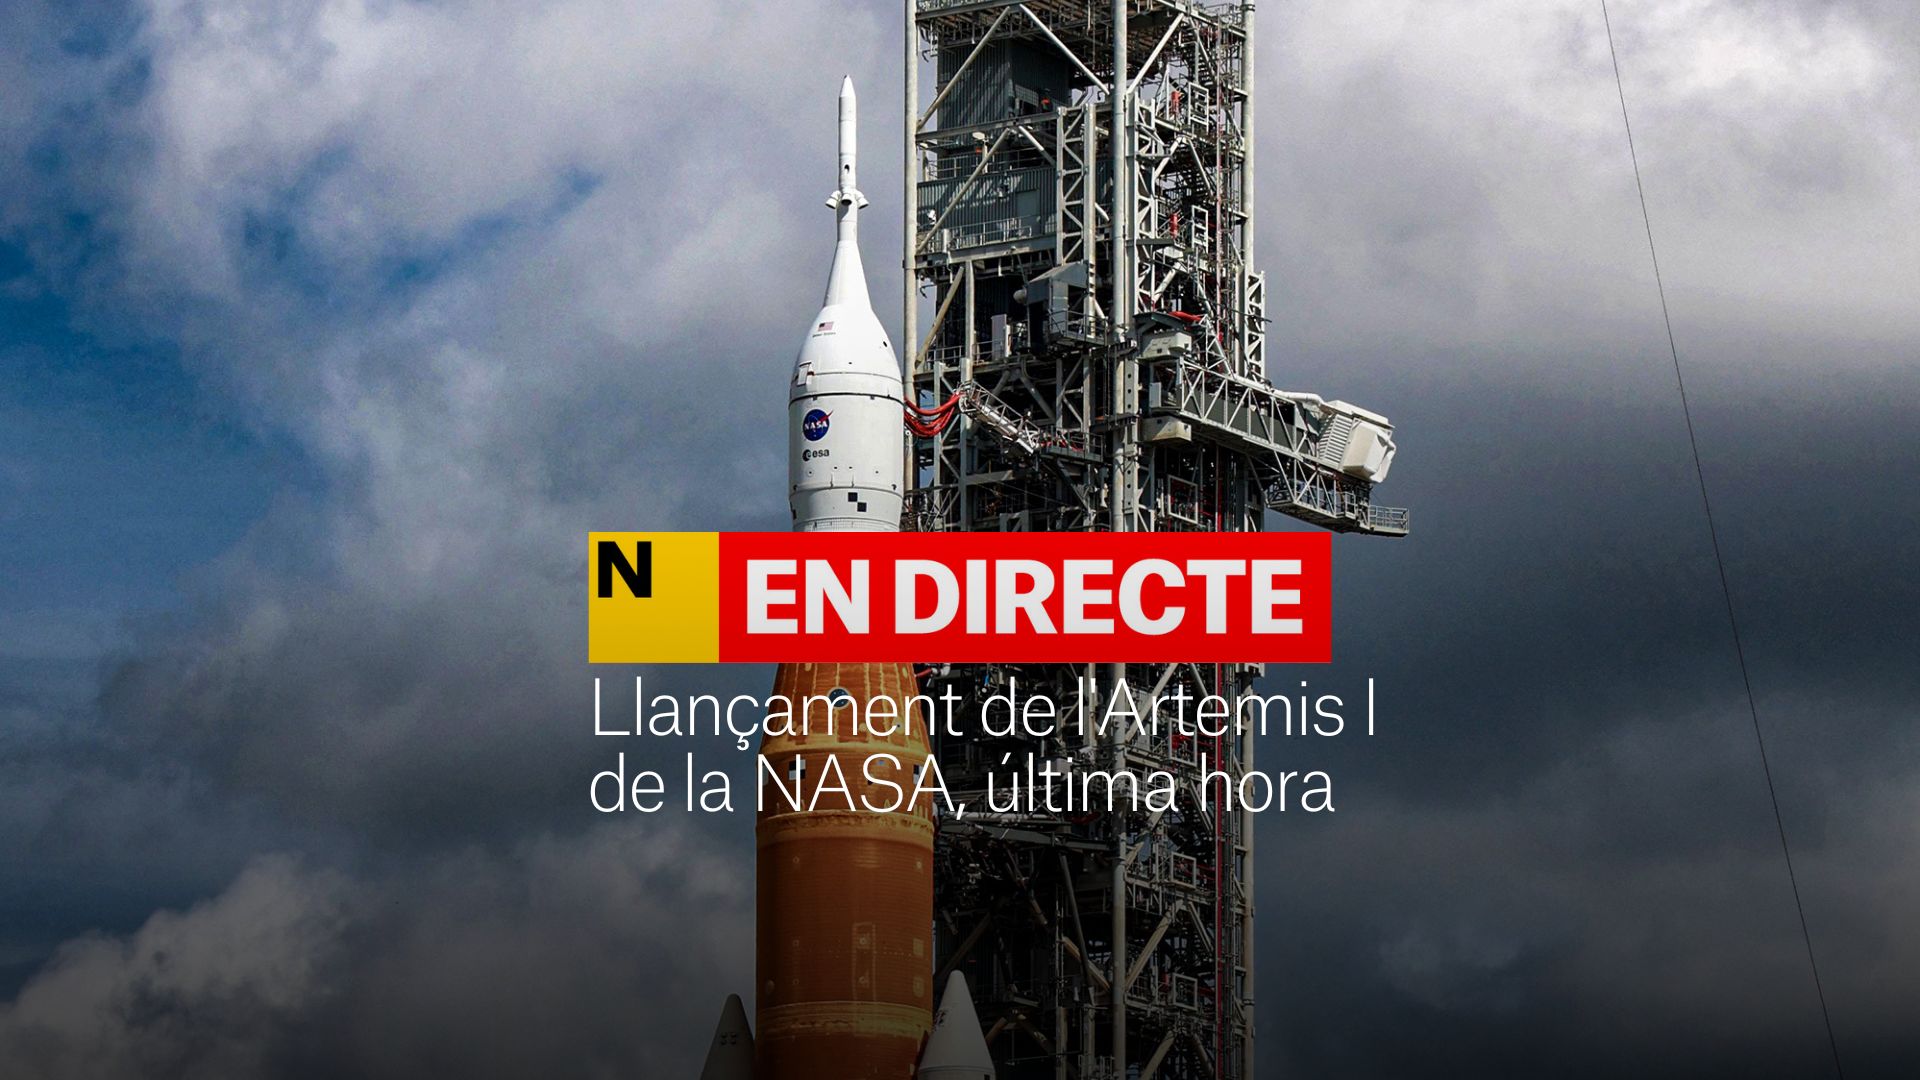 Lanzado con éxito el cohete de Artemis, empieza la misión hacia la luna | DIRECTO